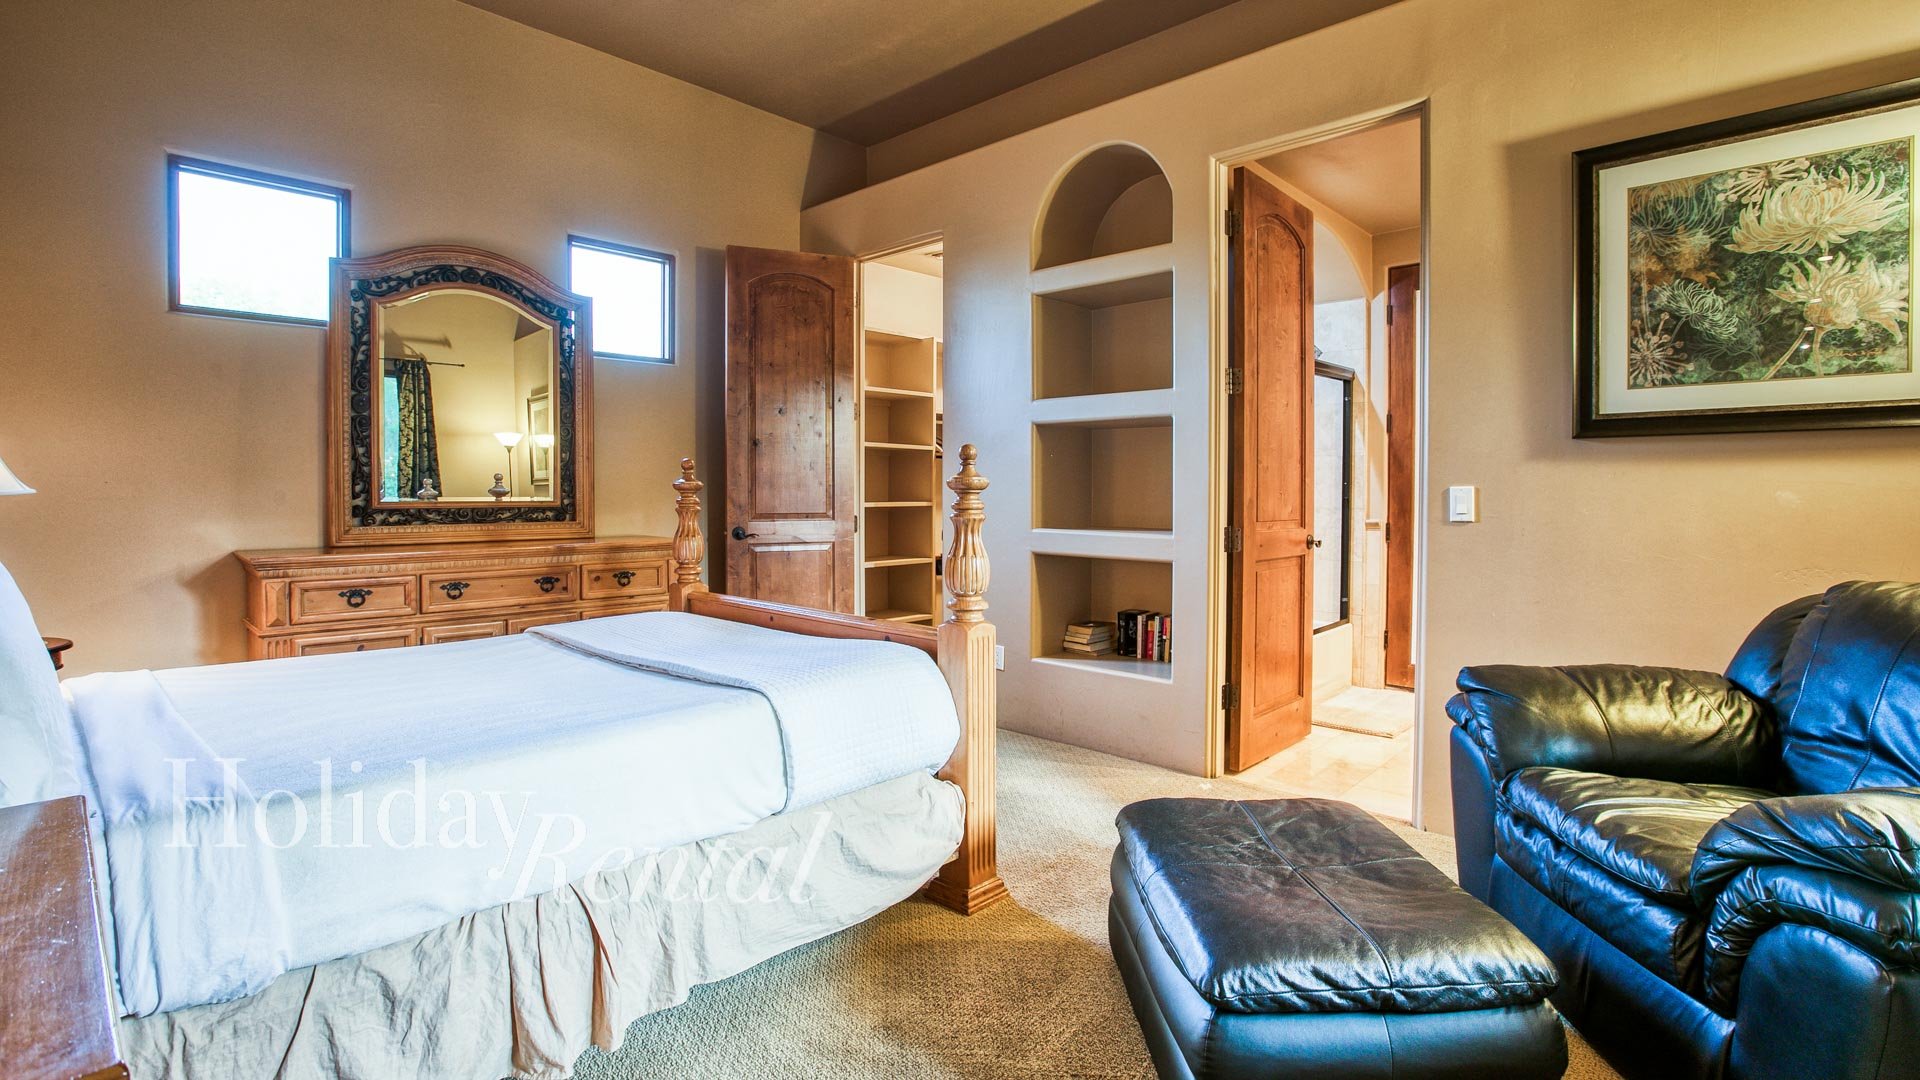 Bedroom 3 - Queen bed with en suite